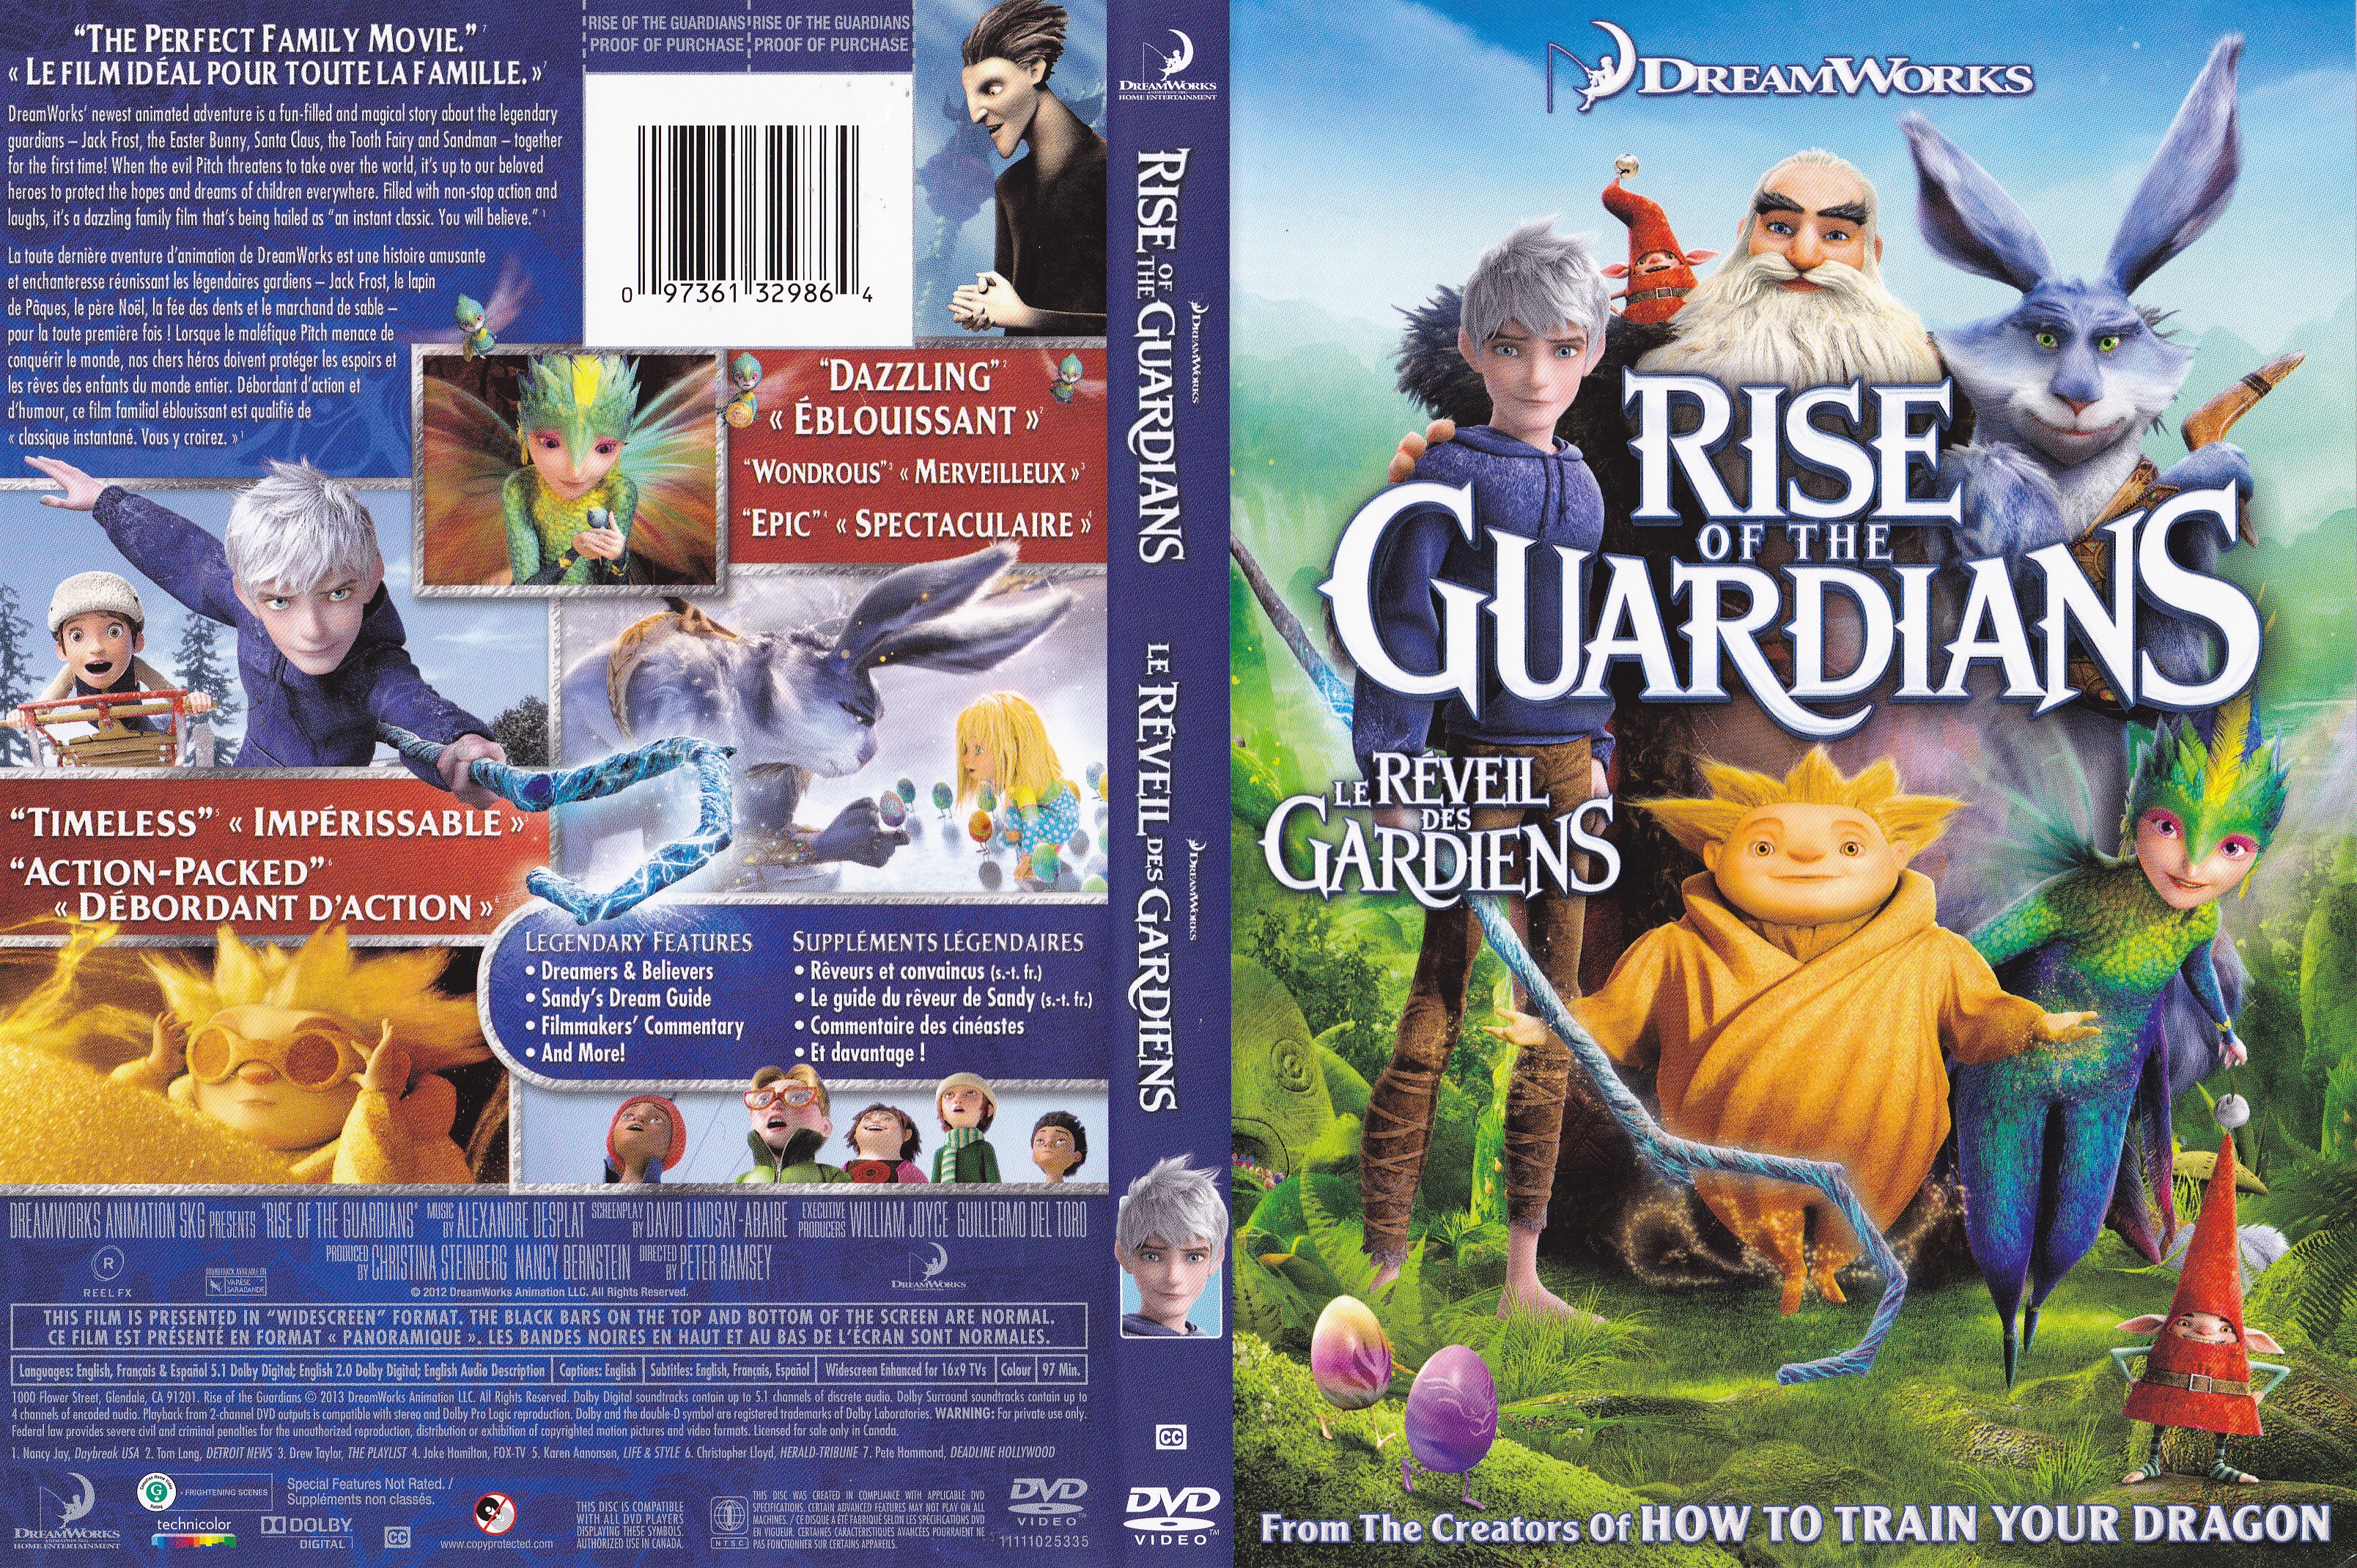 Jaquette DVD Rise of the guardians - Le rveil des gardiens (Canadienne)